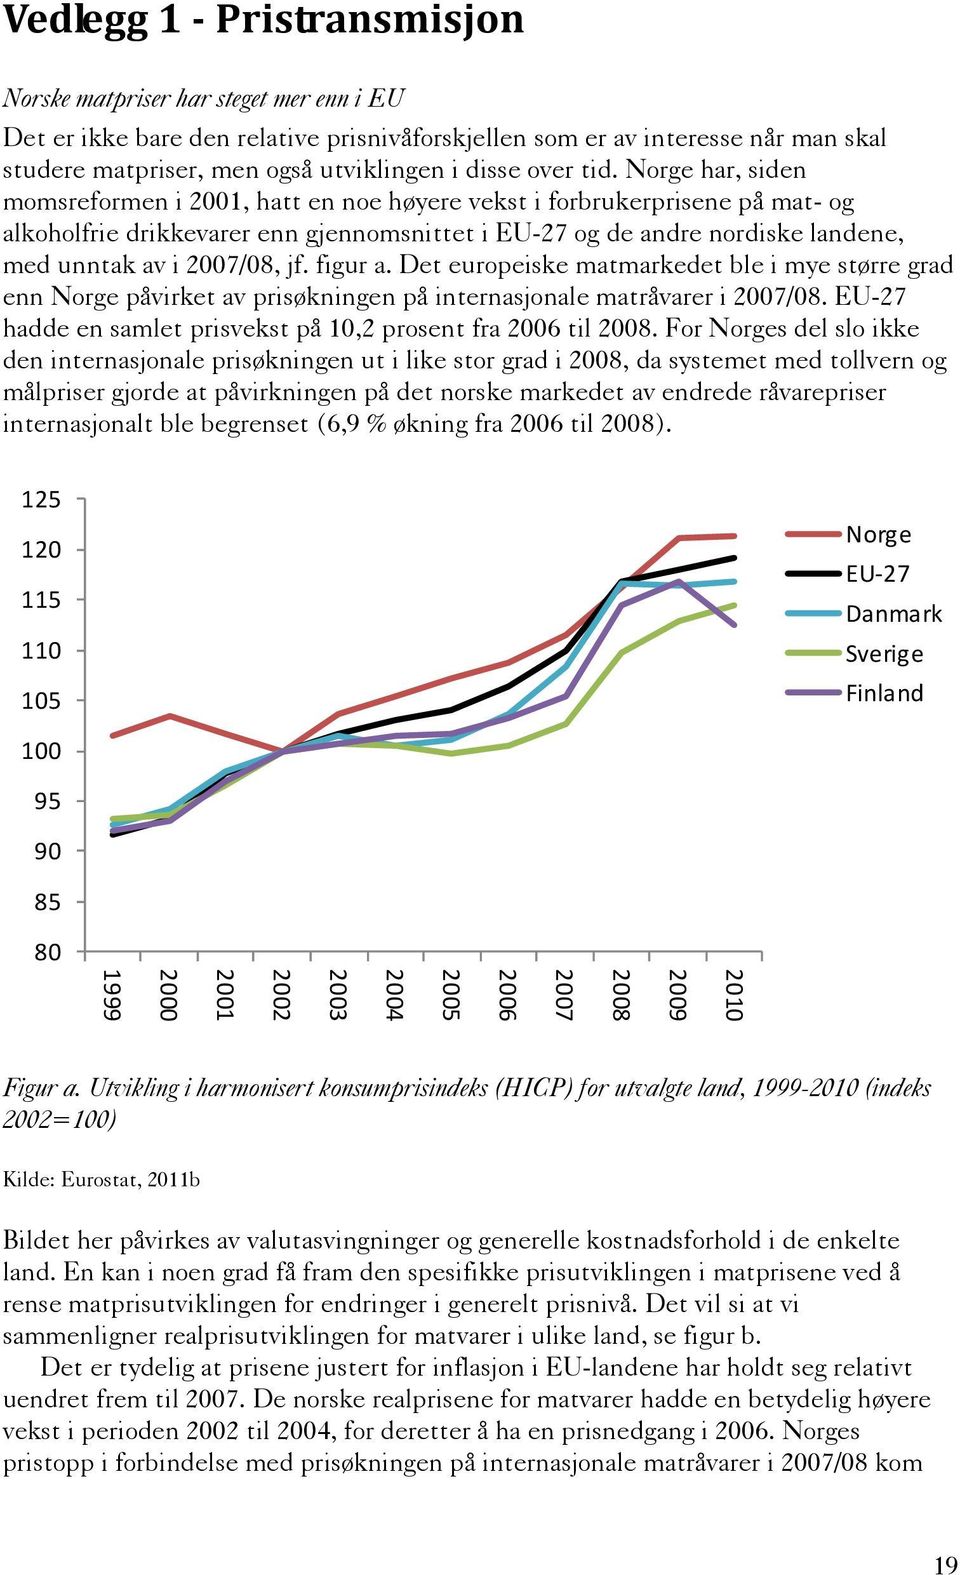 Norge har, siden momsreformen i 2001, hatt en noe høyere vekst i forbrukerprisene på mat- og alkoholfrie drikkevarer enn gjennomsnittet i EU-27 og de andre nordiske landene, med unntak av i 2007/08,